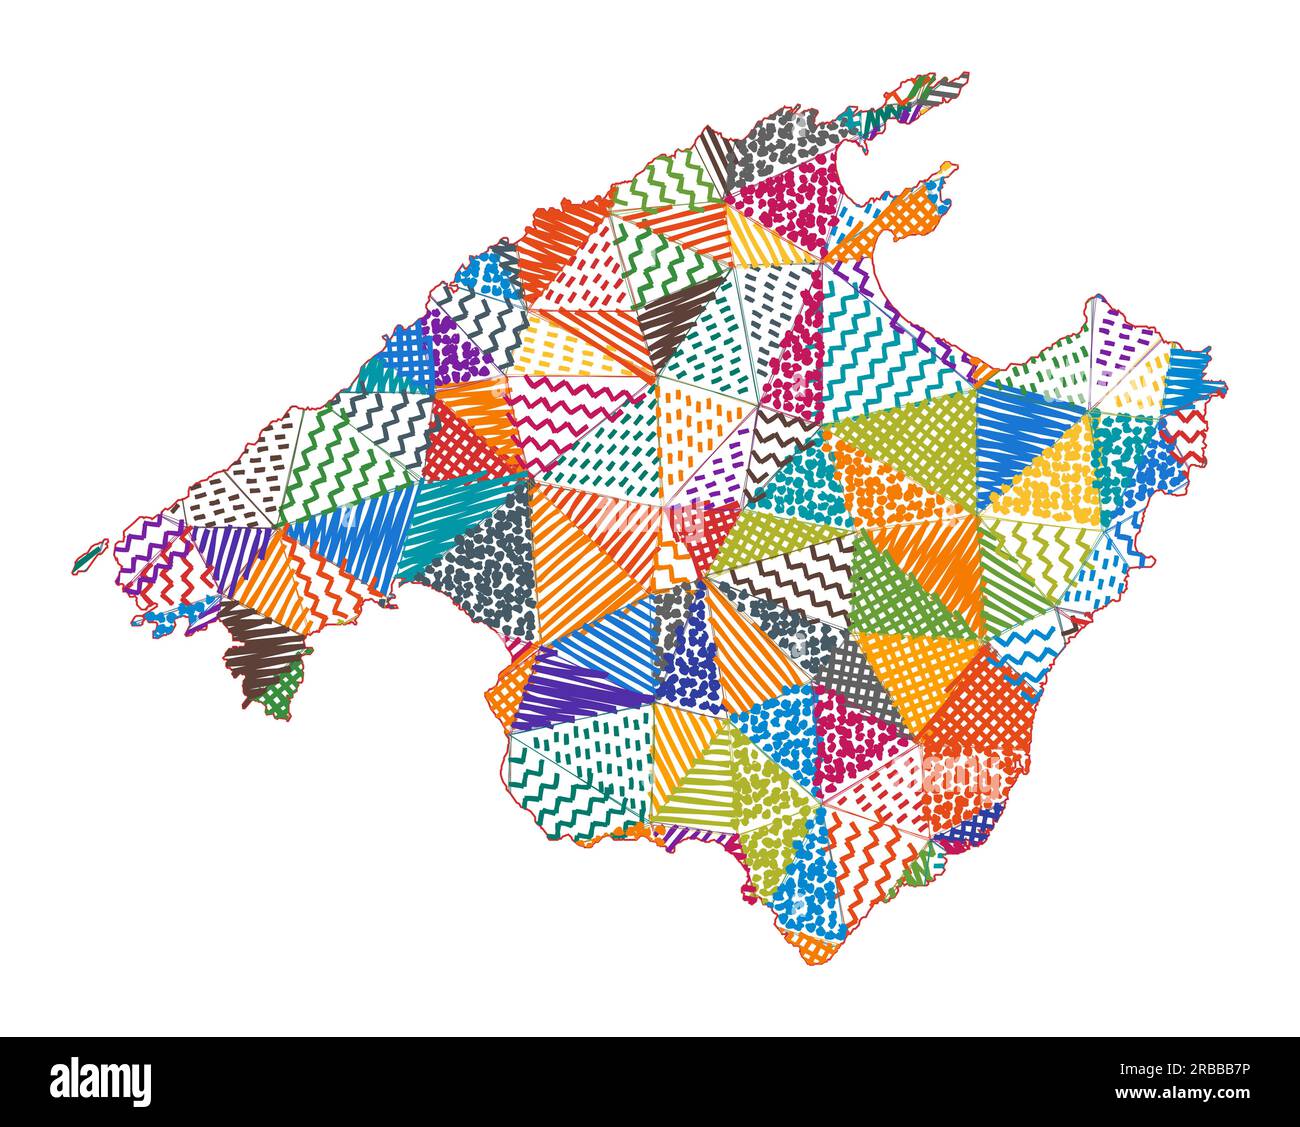 Kinderkarte von Mallorca. Handgezeichnete Polygone in Mallorca-Form. Vektordarstellung. Stock Vektor